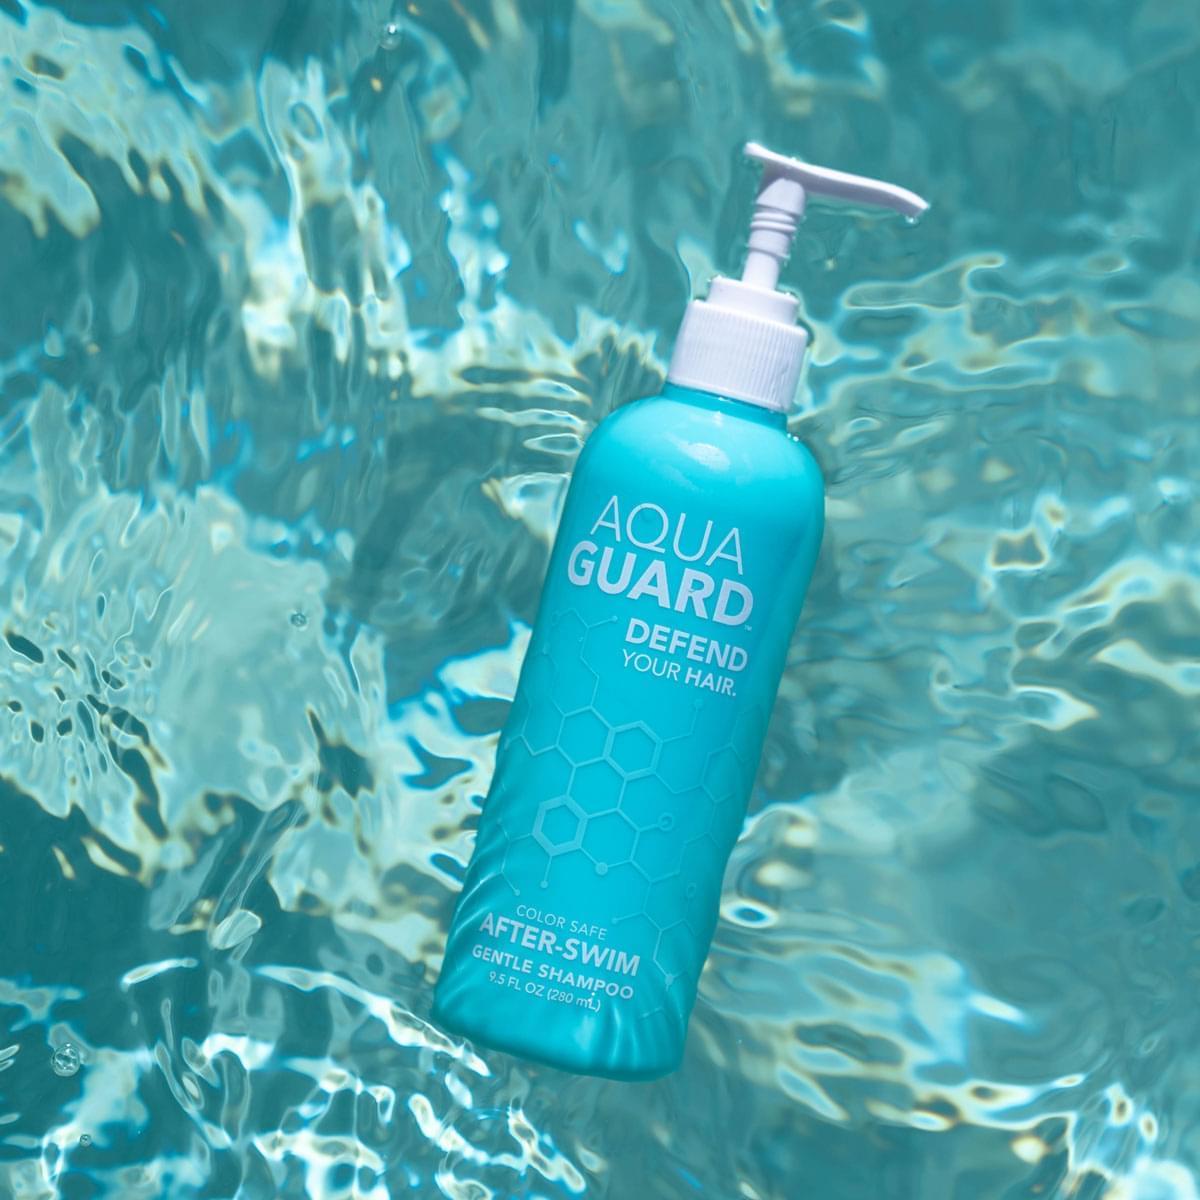 AquaGuard After-Swim Gentle Shampoo